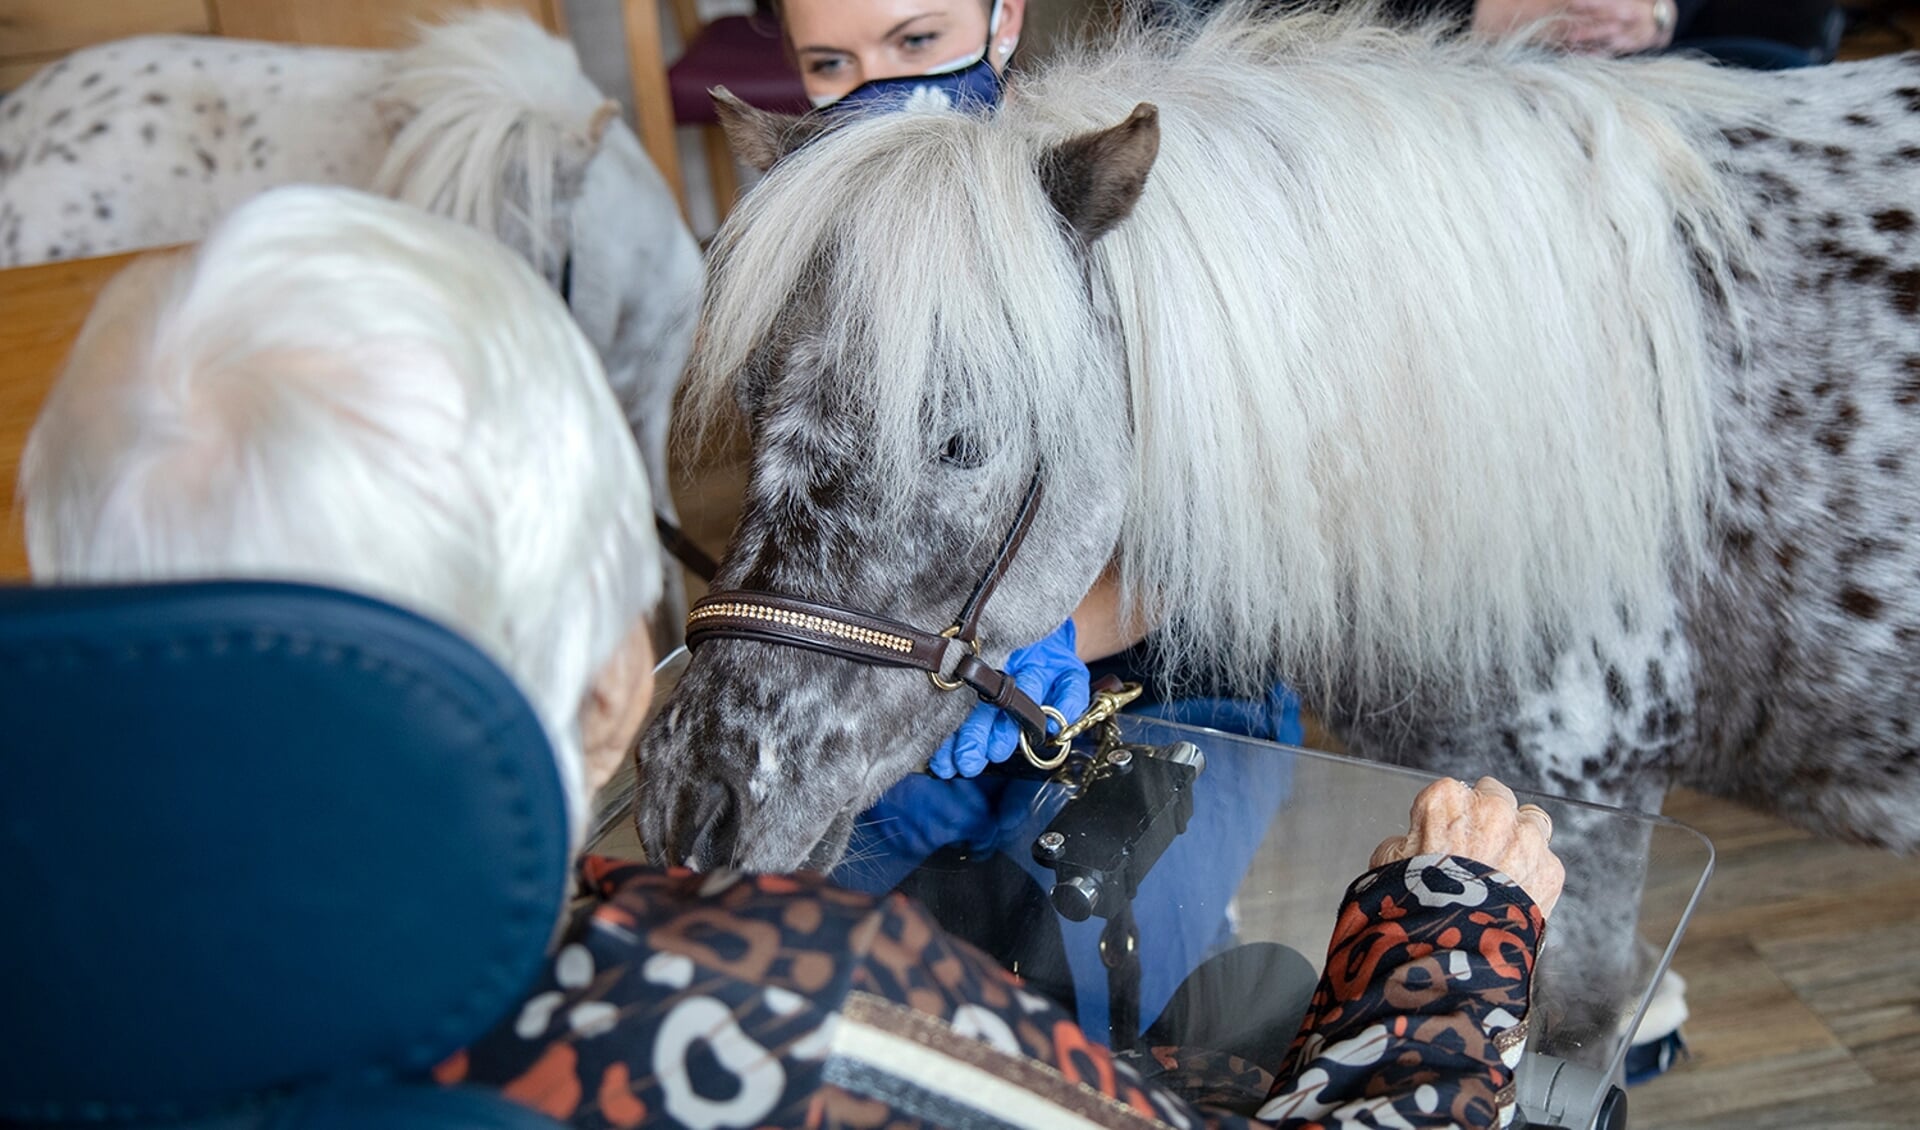 Nynke Woerts gaat met haar pony's op bezoek bij verschillende zorginstellingen. Foto: Ria de Boer-LeistraDe pony's De pony's bieden troost nu familieleden niet geknuffeld mogen worden. Foto: Ria de Boer-LeistraDe pony's bieden troost nu familieleden niet geknuffeld mogen worden. Foto: Ria de Boer-Leistra